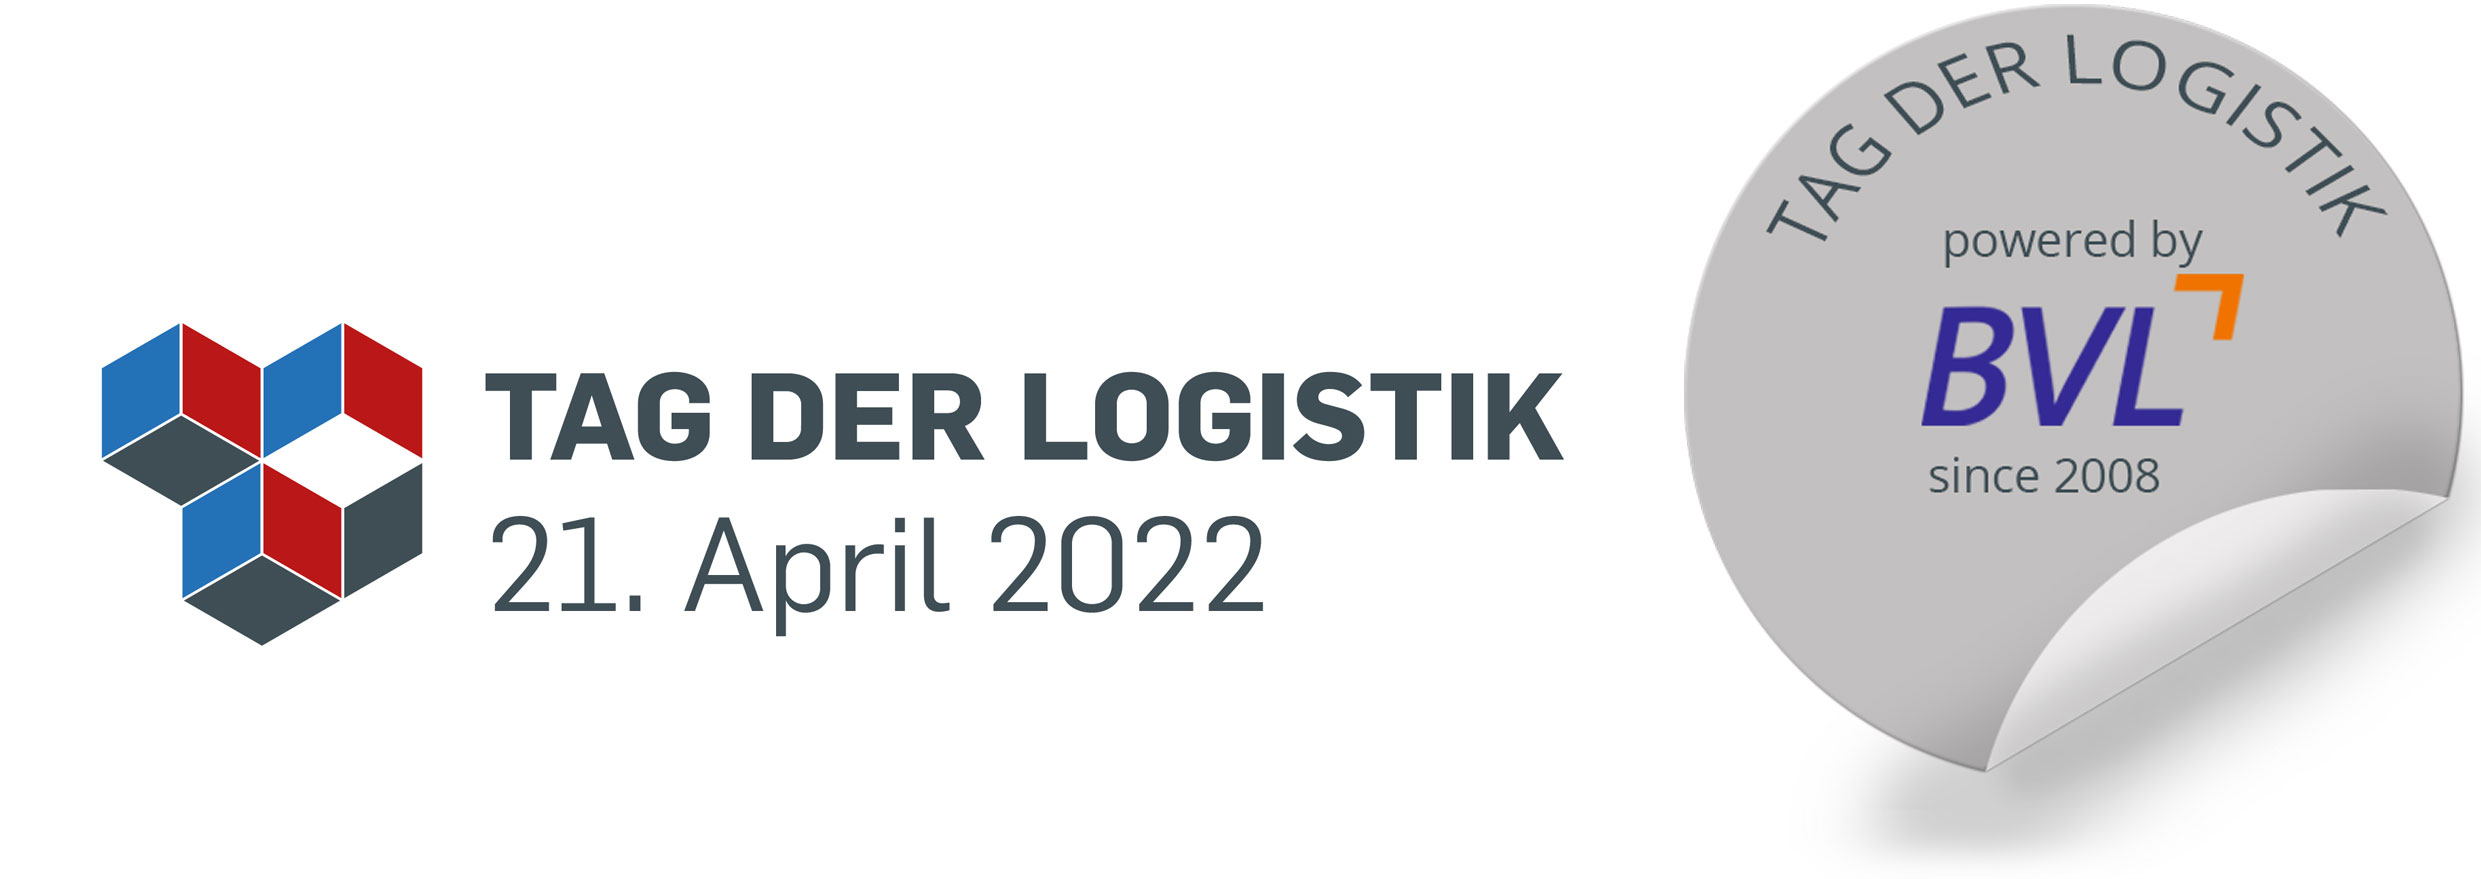 Tag der Logistik 2020